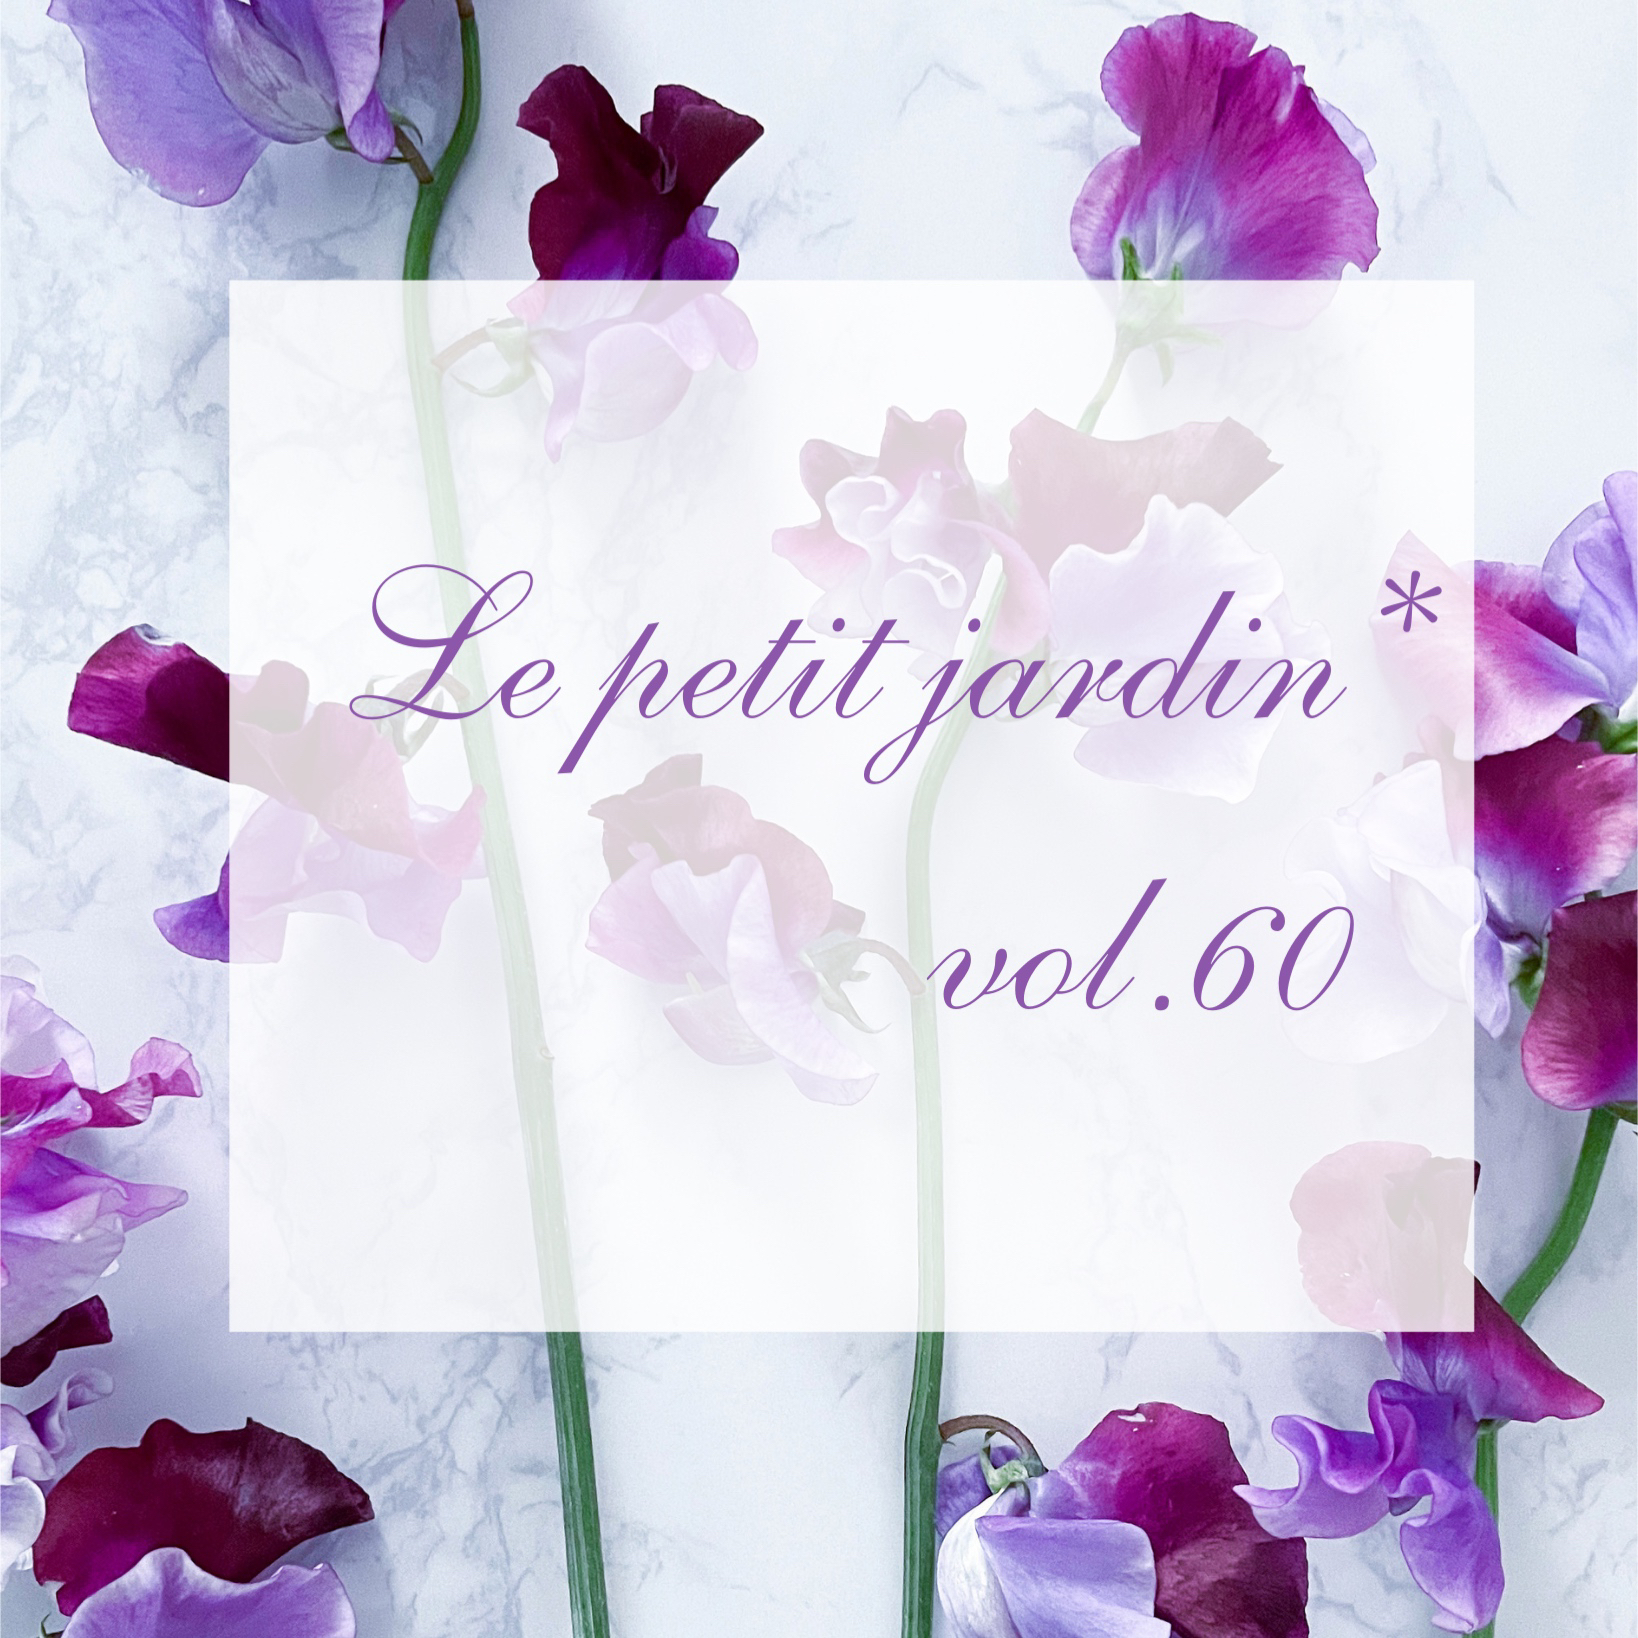 Le petit jardin* vol.60 プチジャルダン(ハンドメイドイベント)のイメージ